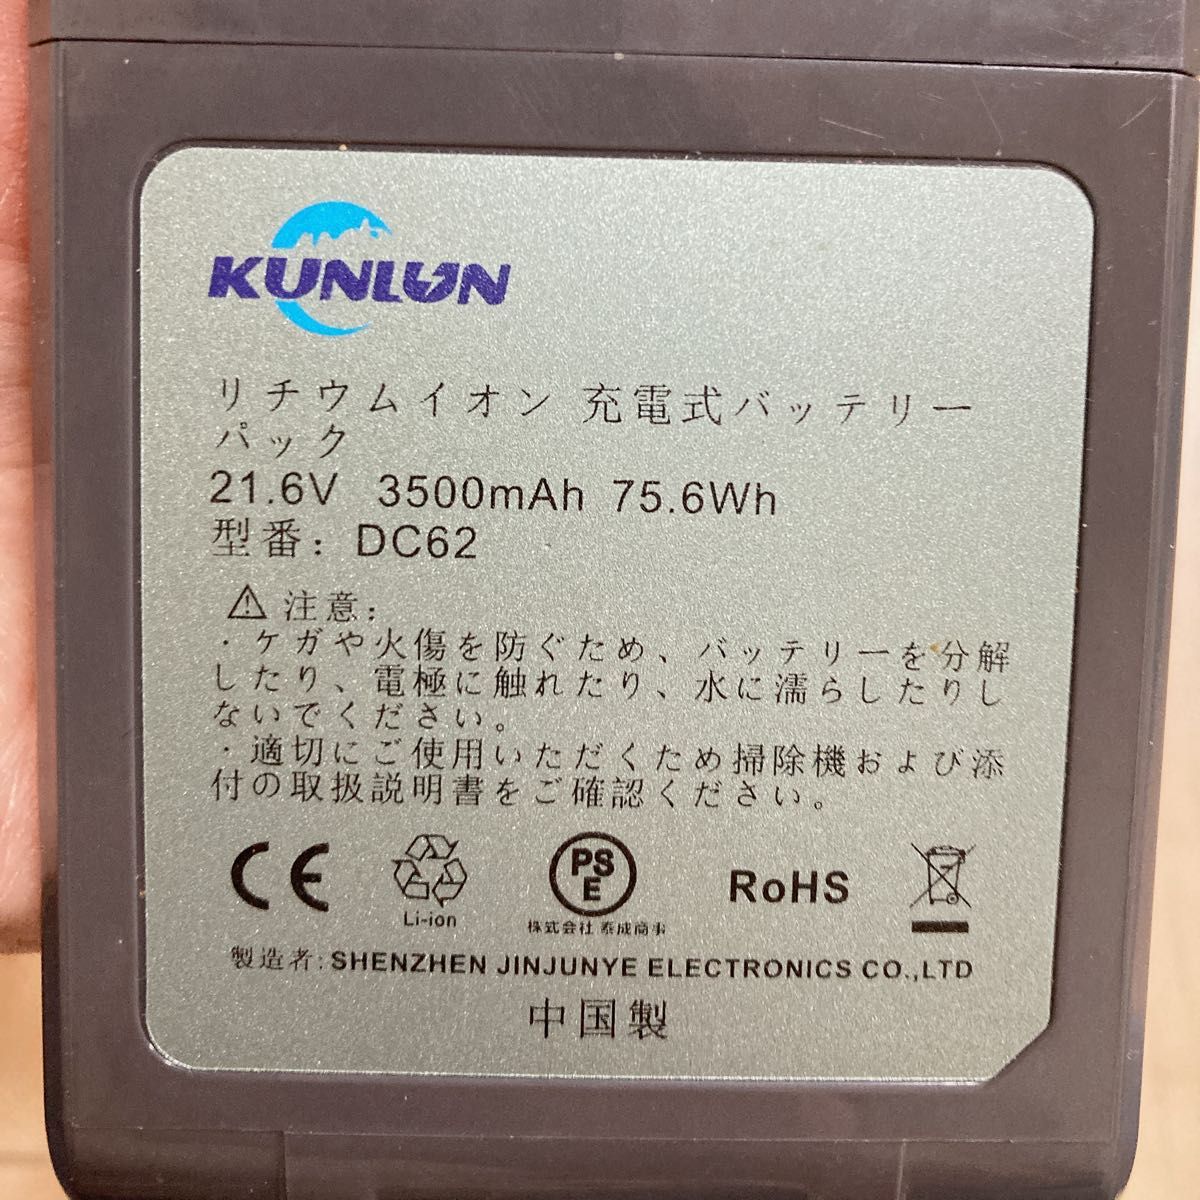 ダイソン v6 DC62 互換品 バッテリー 互換バッテリー 掃除機バッテリー